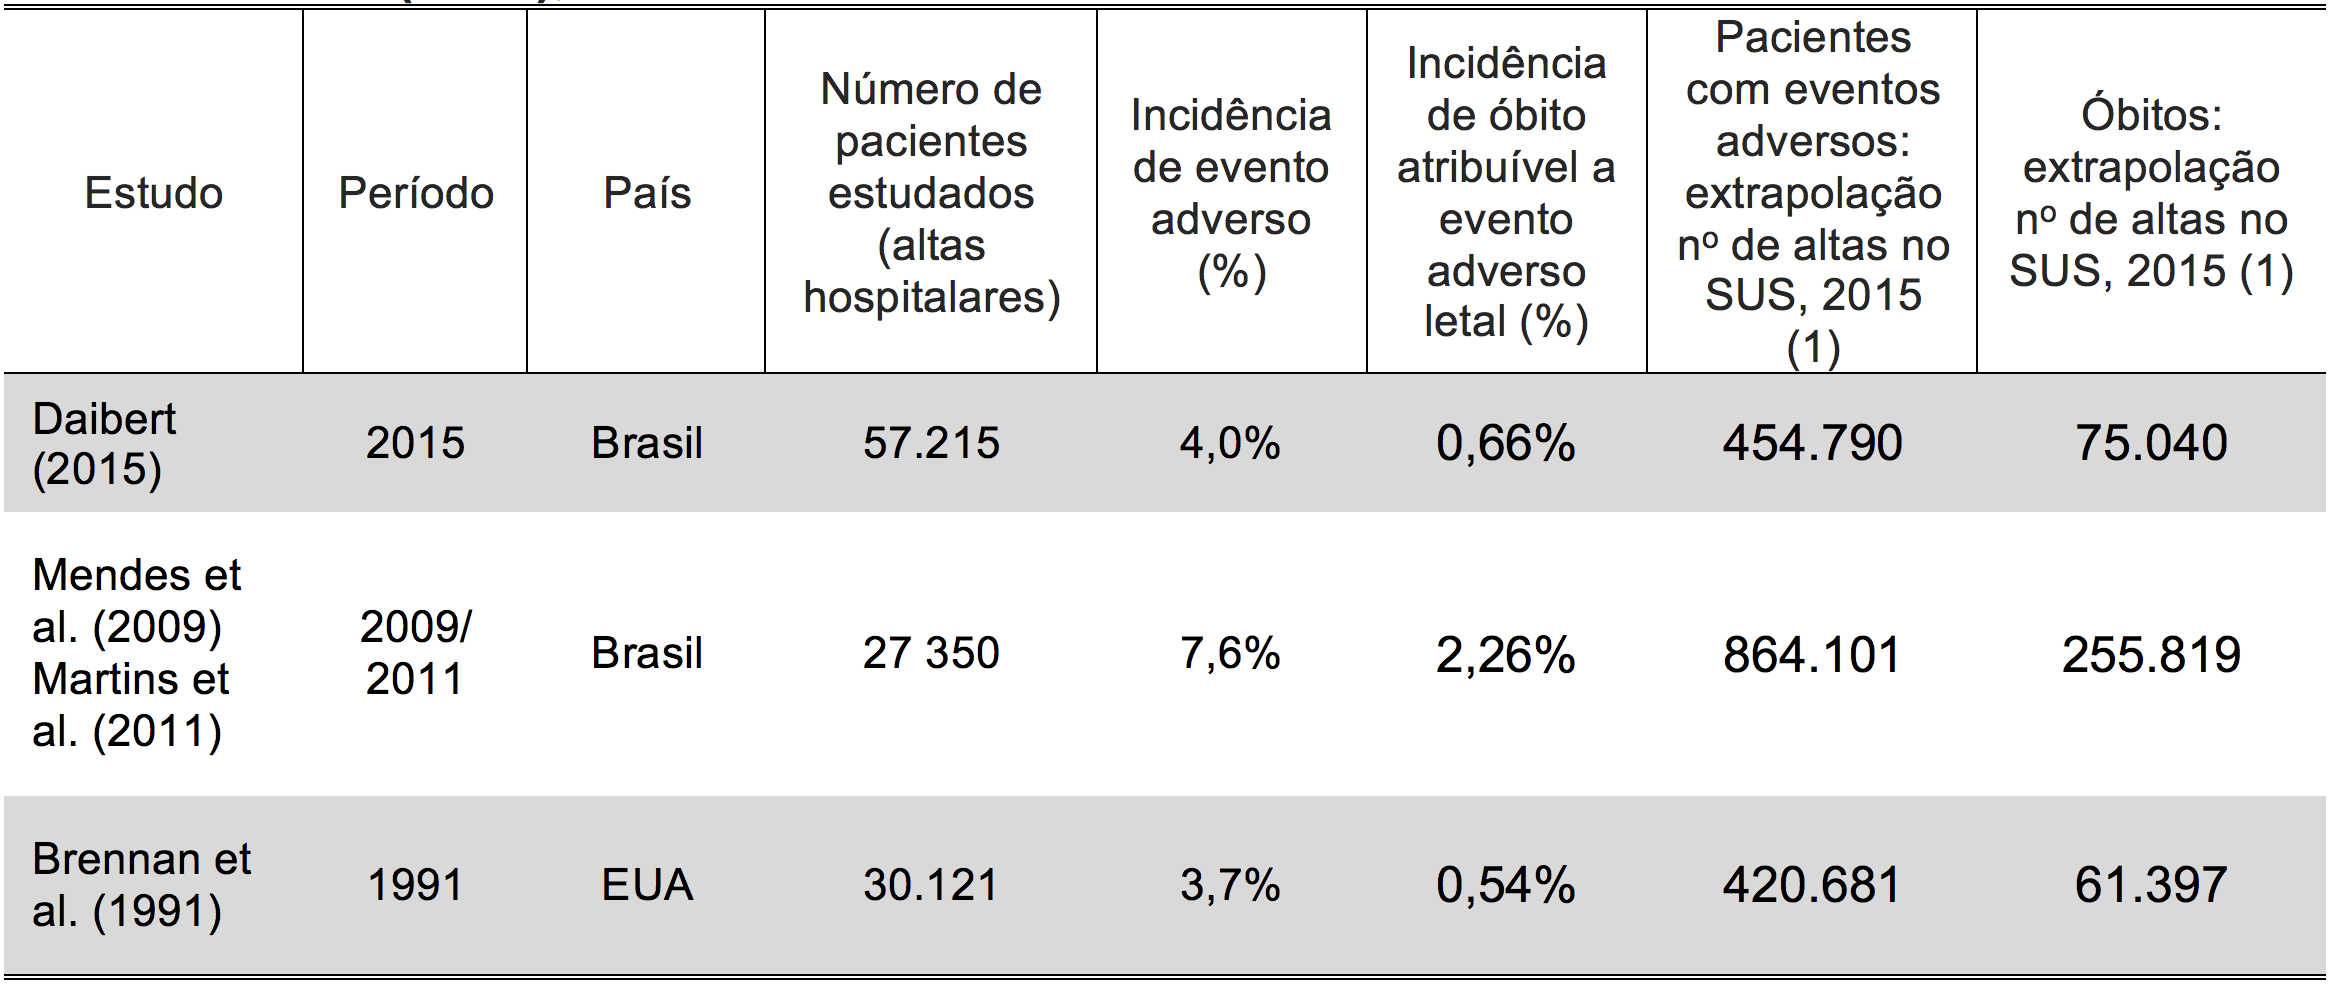 Tabela 3 - Estimativa de custos por erros assistenciais hospitalares na saúde suplementar no Brasil, 2015. 1. No de internações hospitalares da saúde suplementar no Brasil em 2015: 7.924.127.